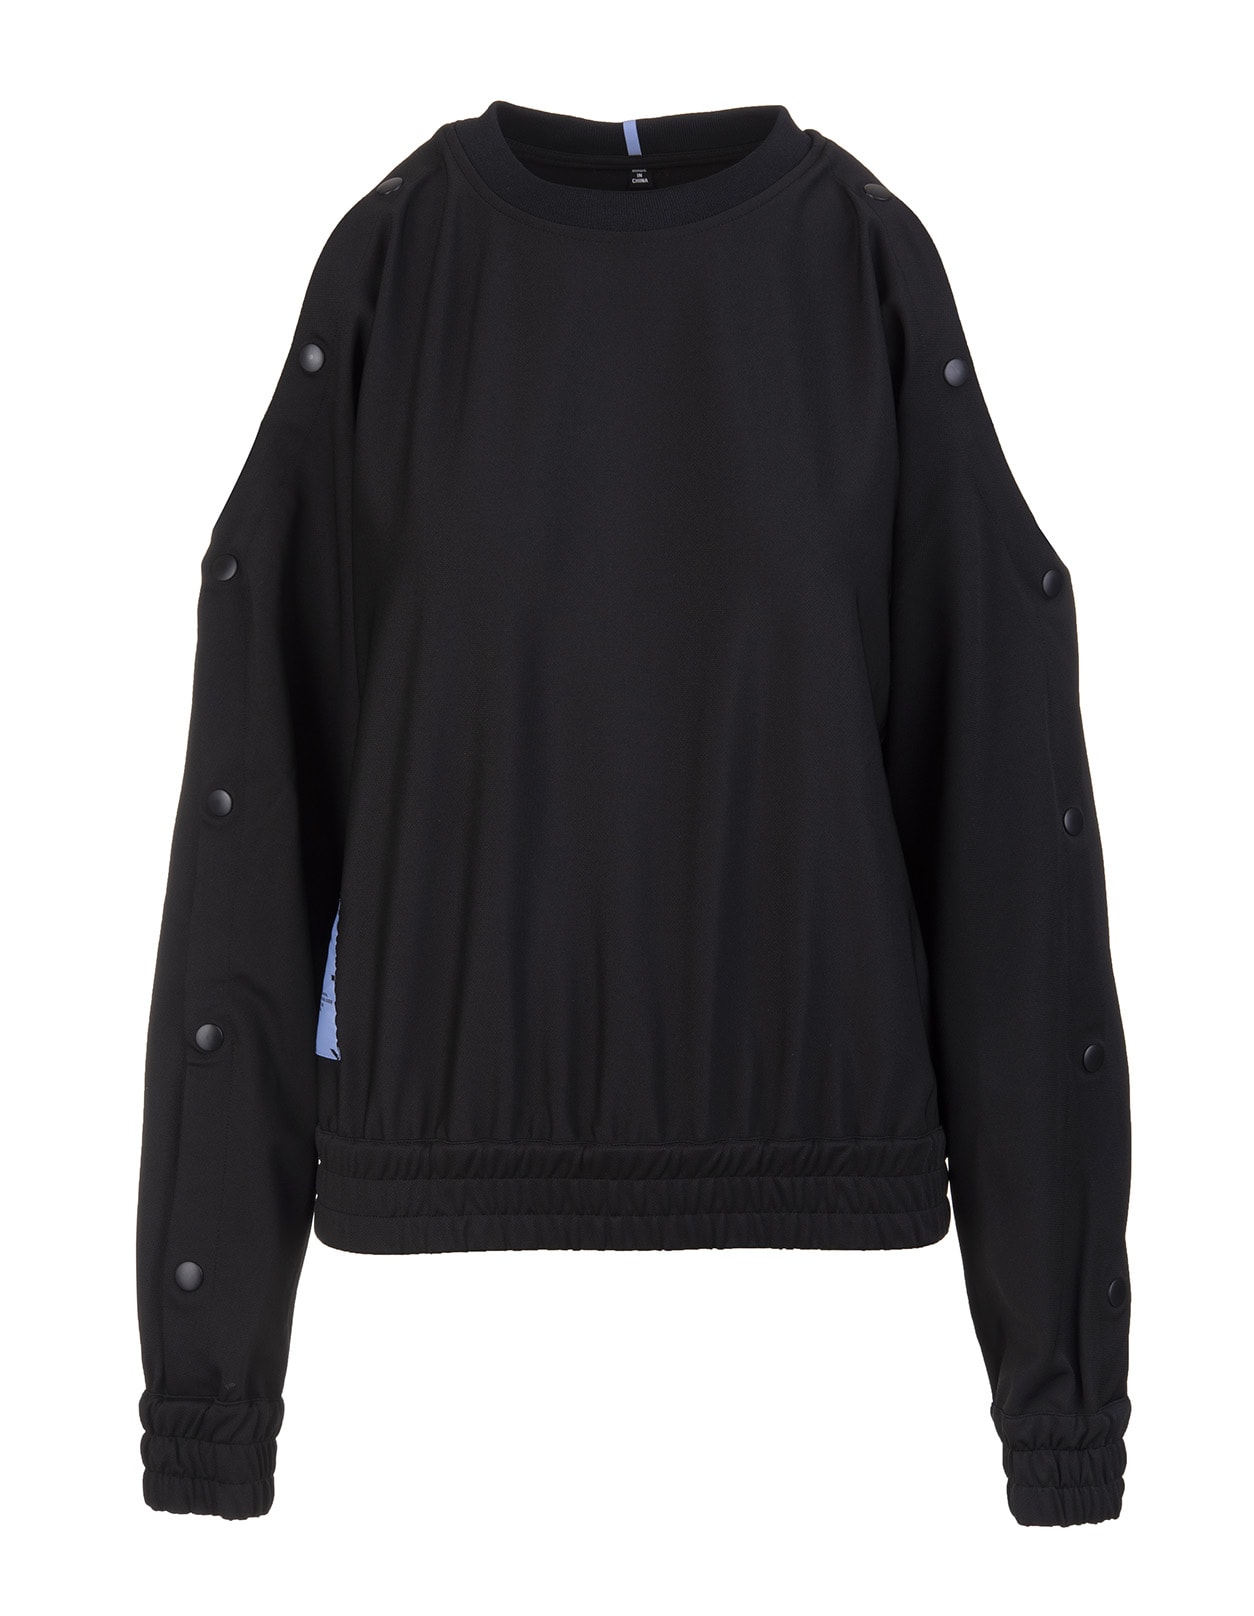 McQ Alexander McQueen Woman Black Sweatshirt With Off Shoulders